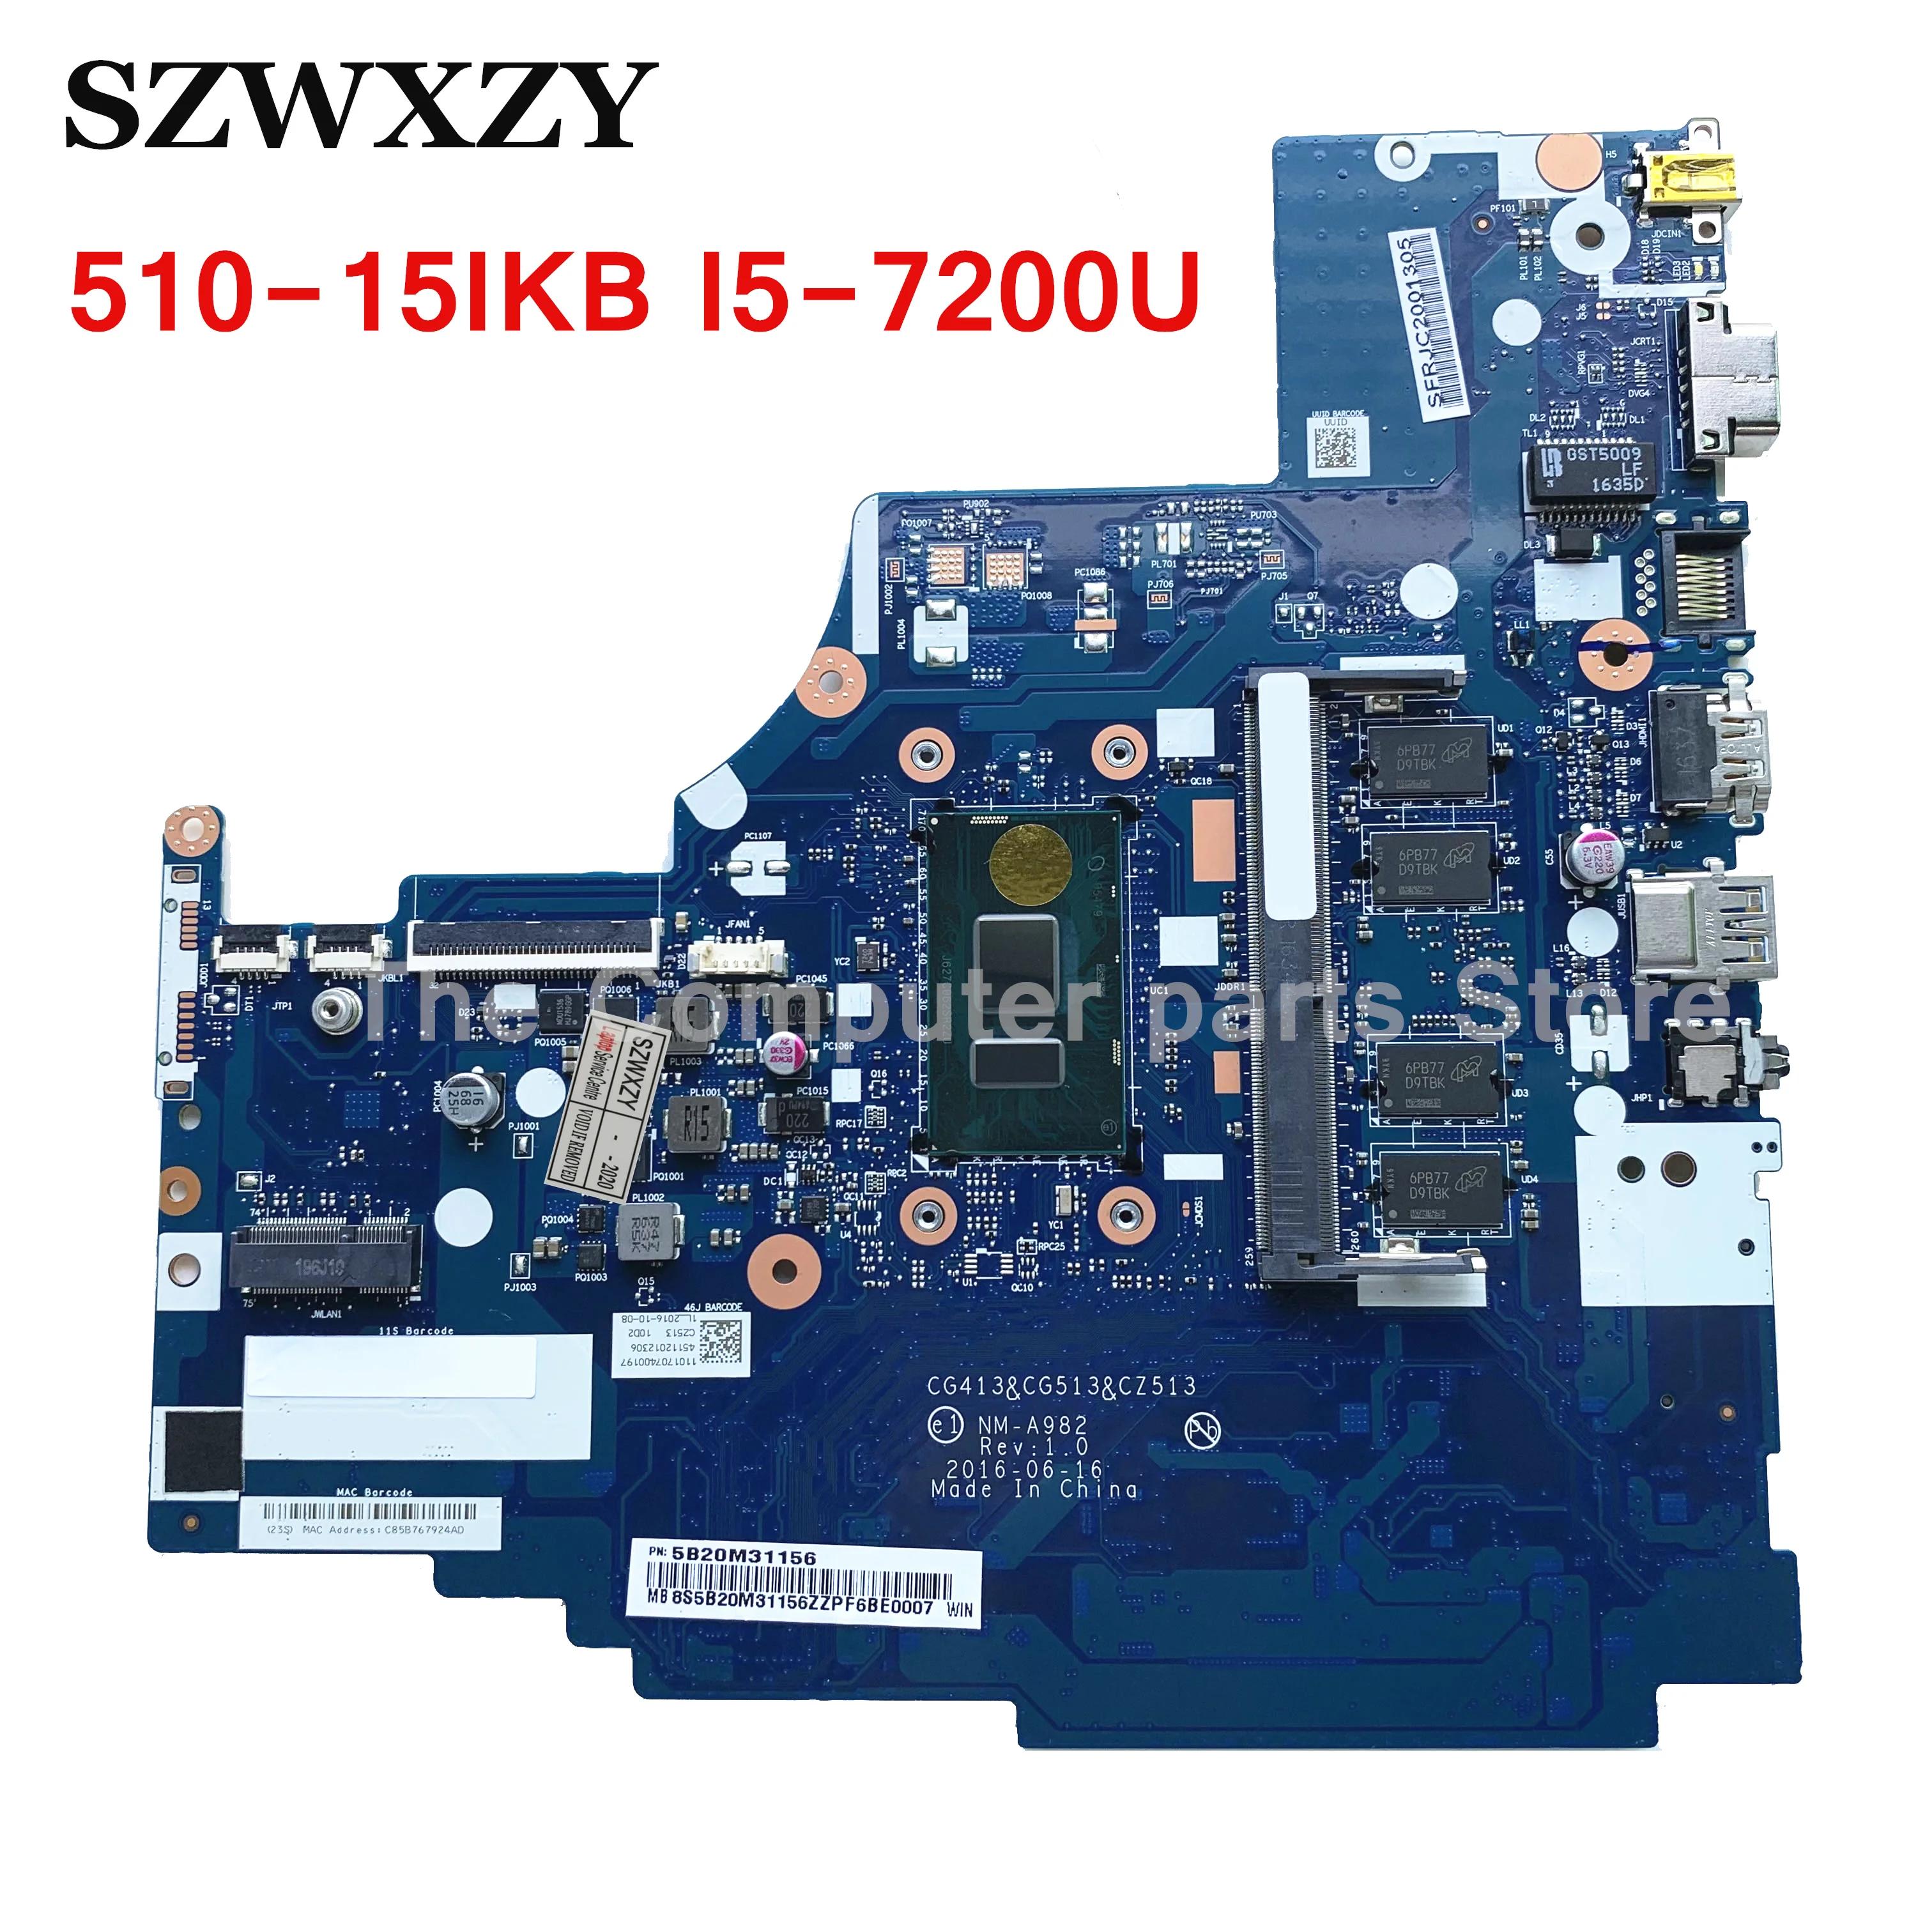 Lenovo Ideapad 510-15IKB Ʈ , FRU 5B20M31156 NM-A982 I5-7200U CPU, 4GB RAM,